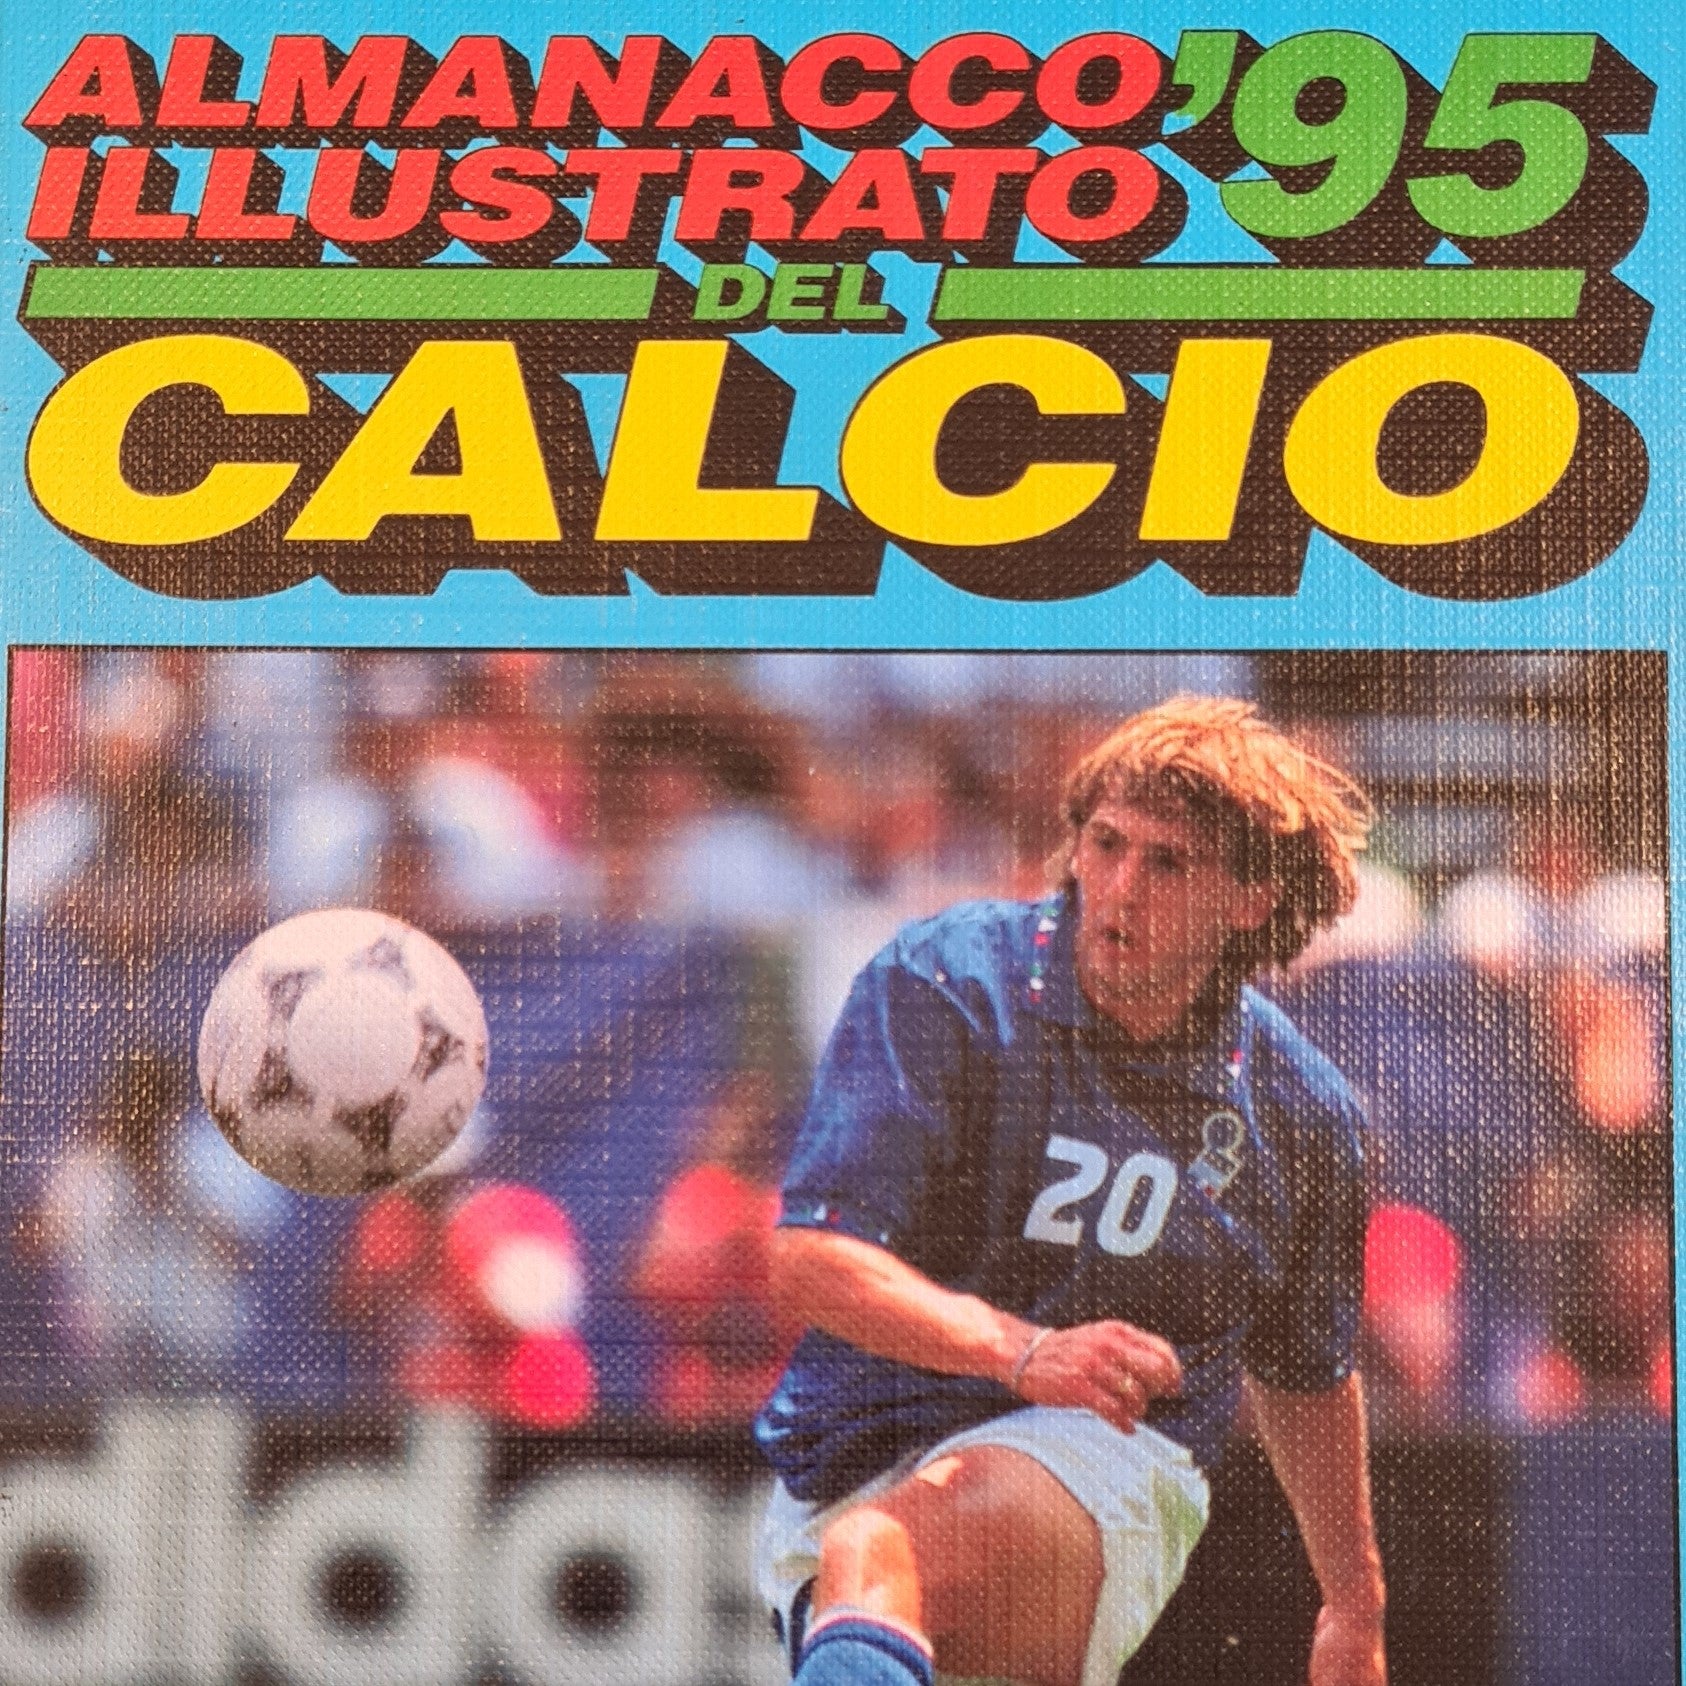 Almanacco Illustrato Del Calcio '95 – ALS Malta Store